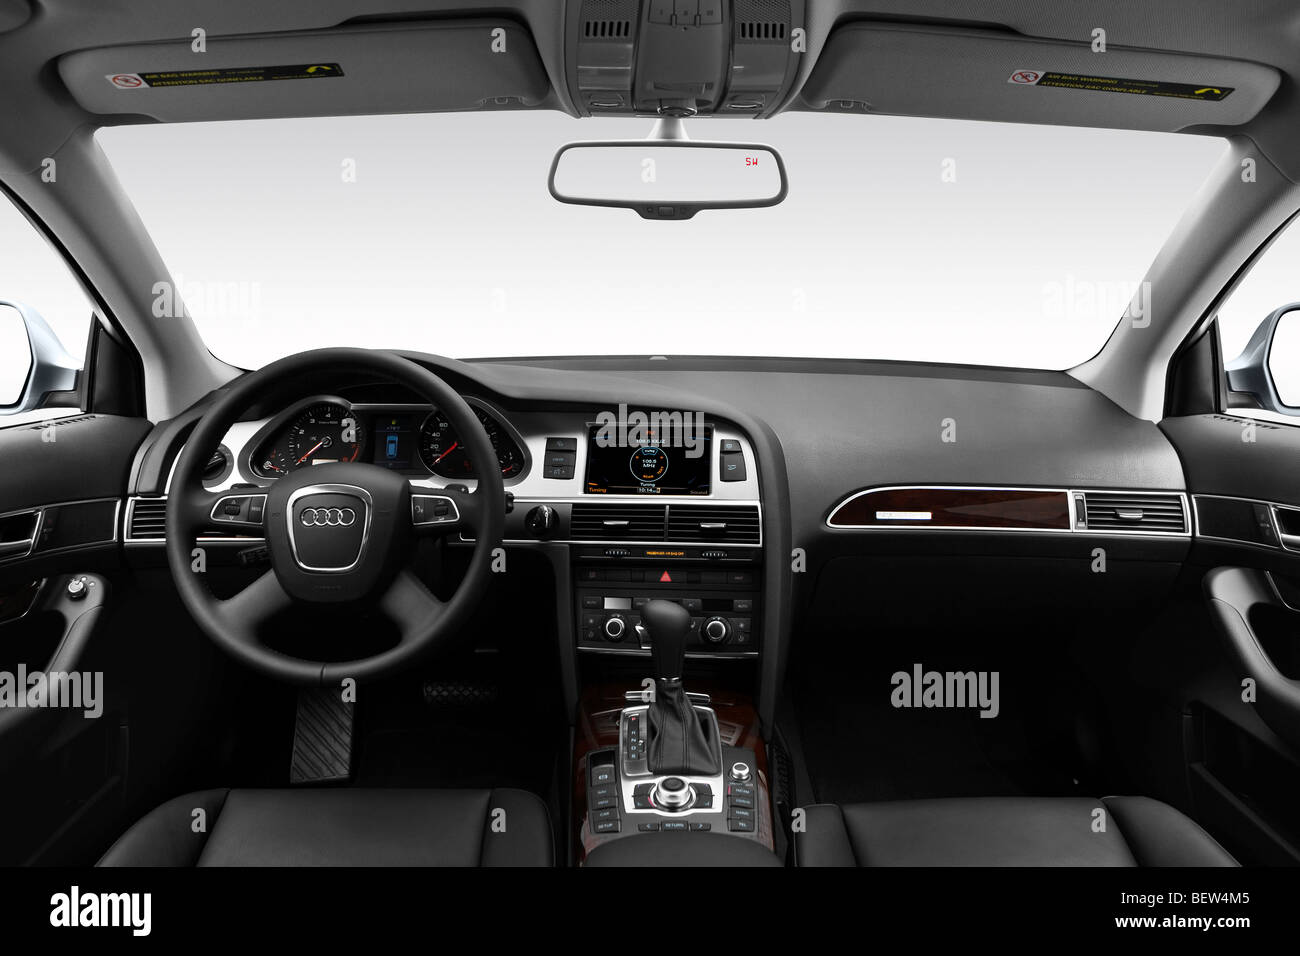 2010 Audi A6 Avant 3.0 quattro en gris - planche de bord, console centrale, le levier de vitesses voir Banque D'Images